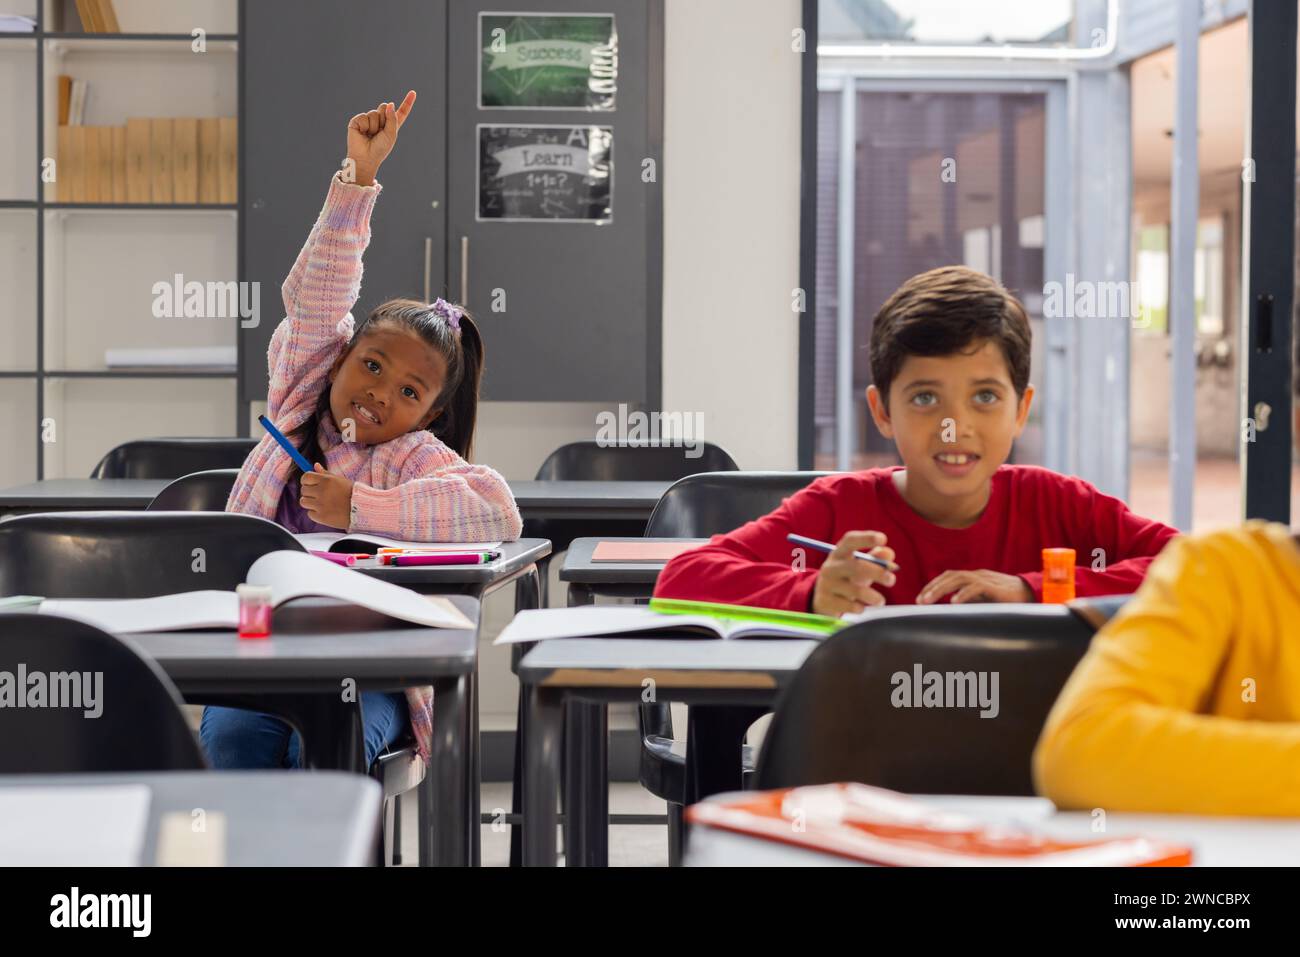 Una ragazza birazziale con una camicia rosa a quadri alza la mano con impazienza in una classe scolastica Foto Stock